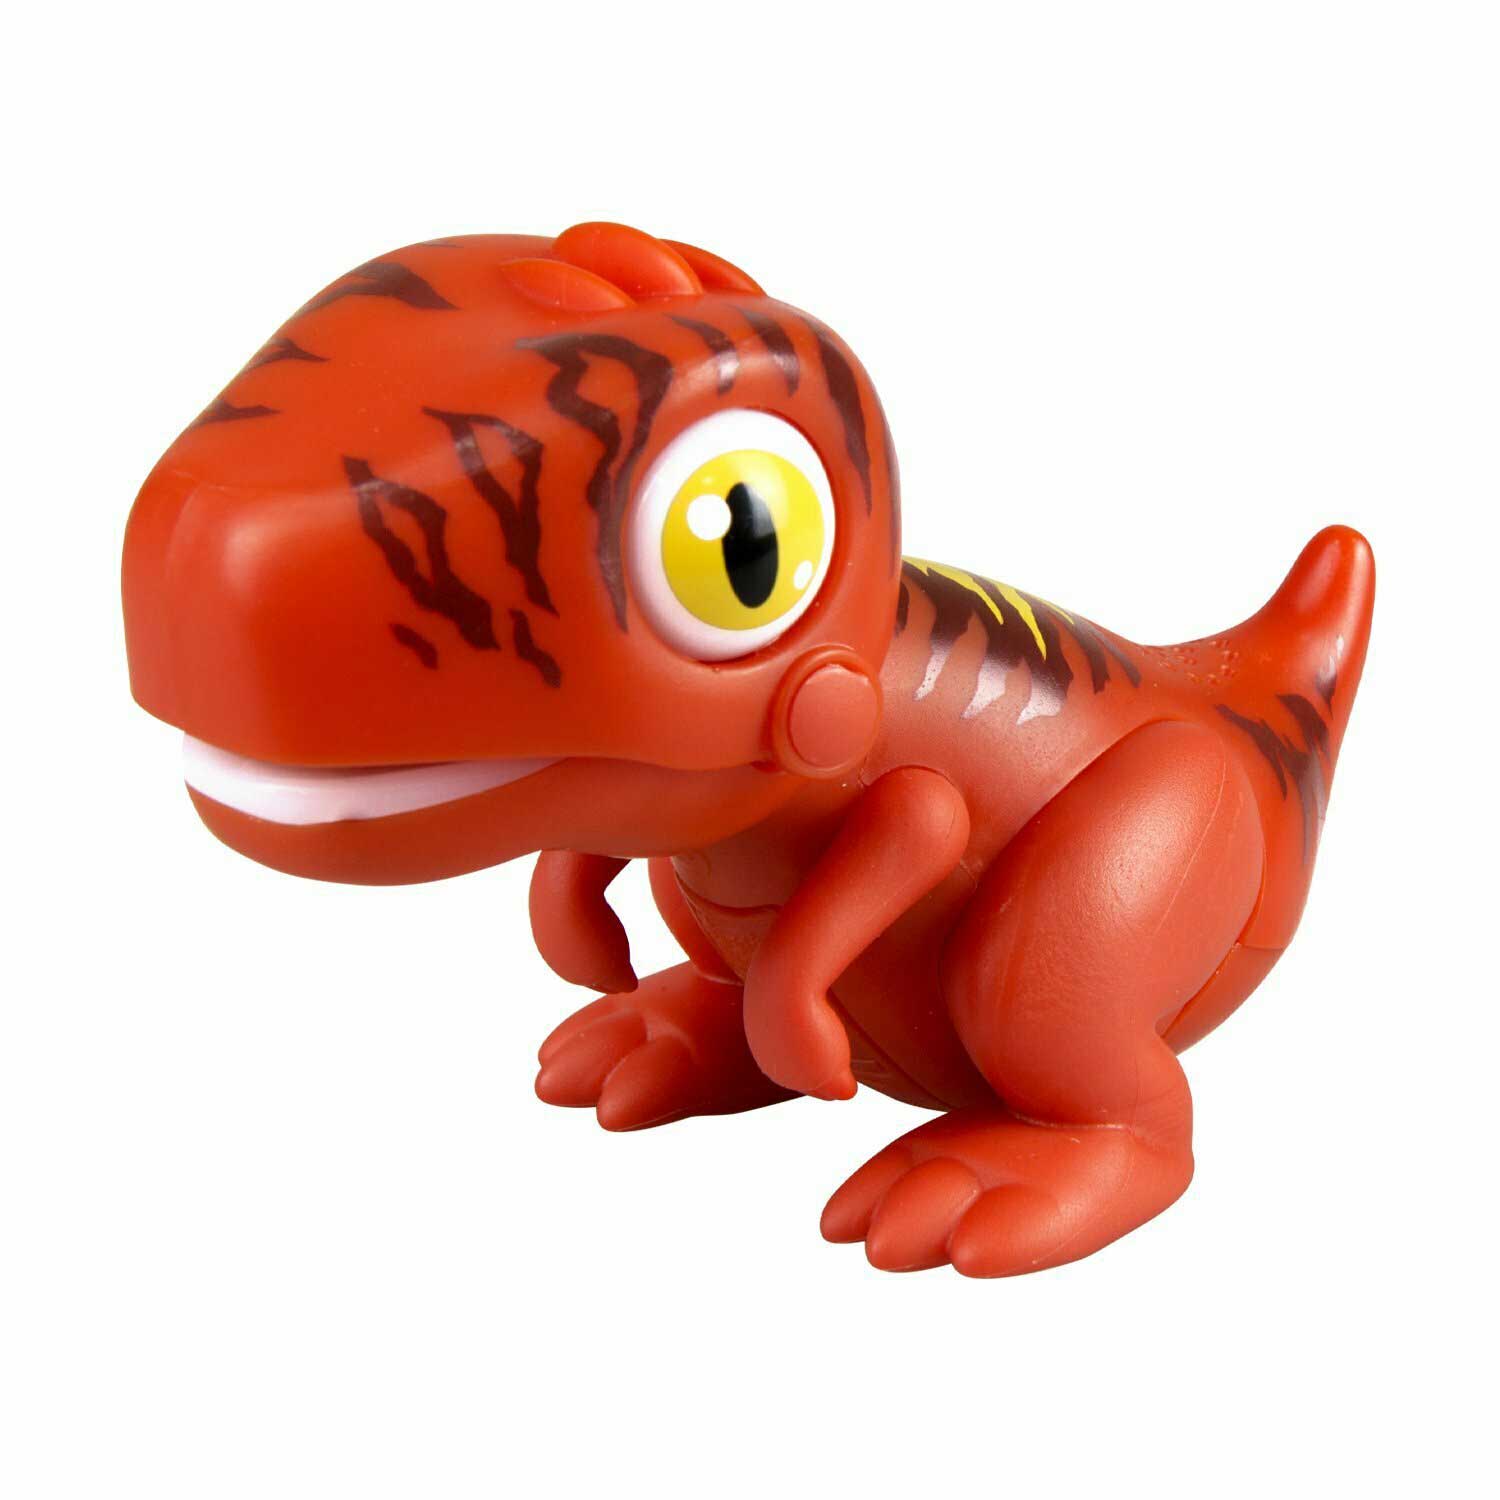 Динозавр Silverlit Gulliver Глупи красный арт.88581-1 роботы ycoo роботизированная игрушка динозавр глупи 88581 1